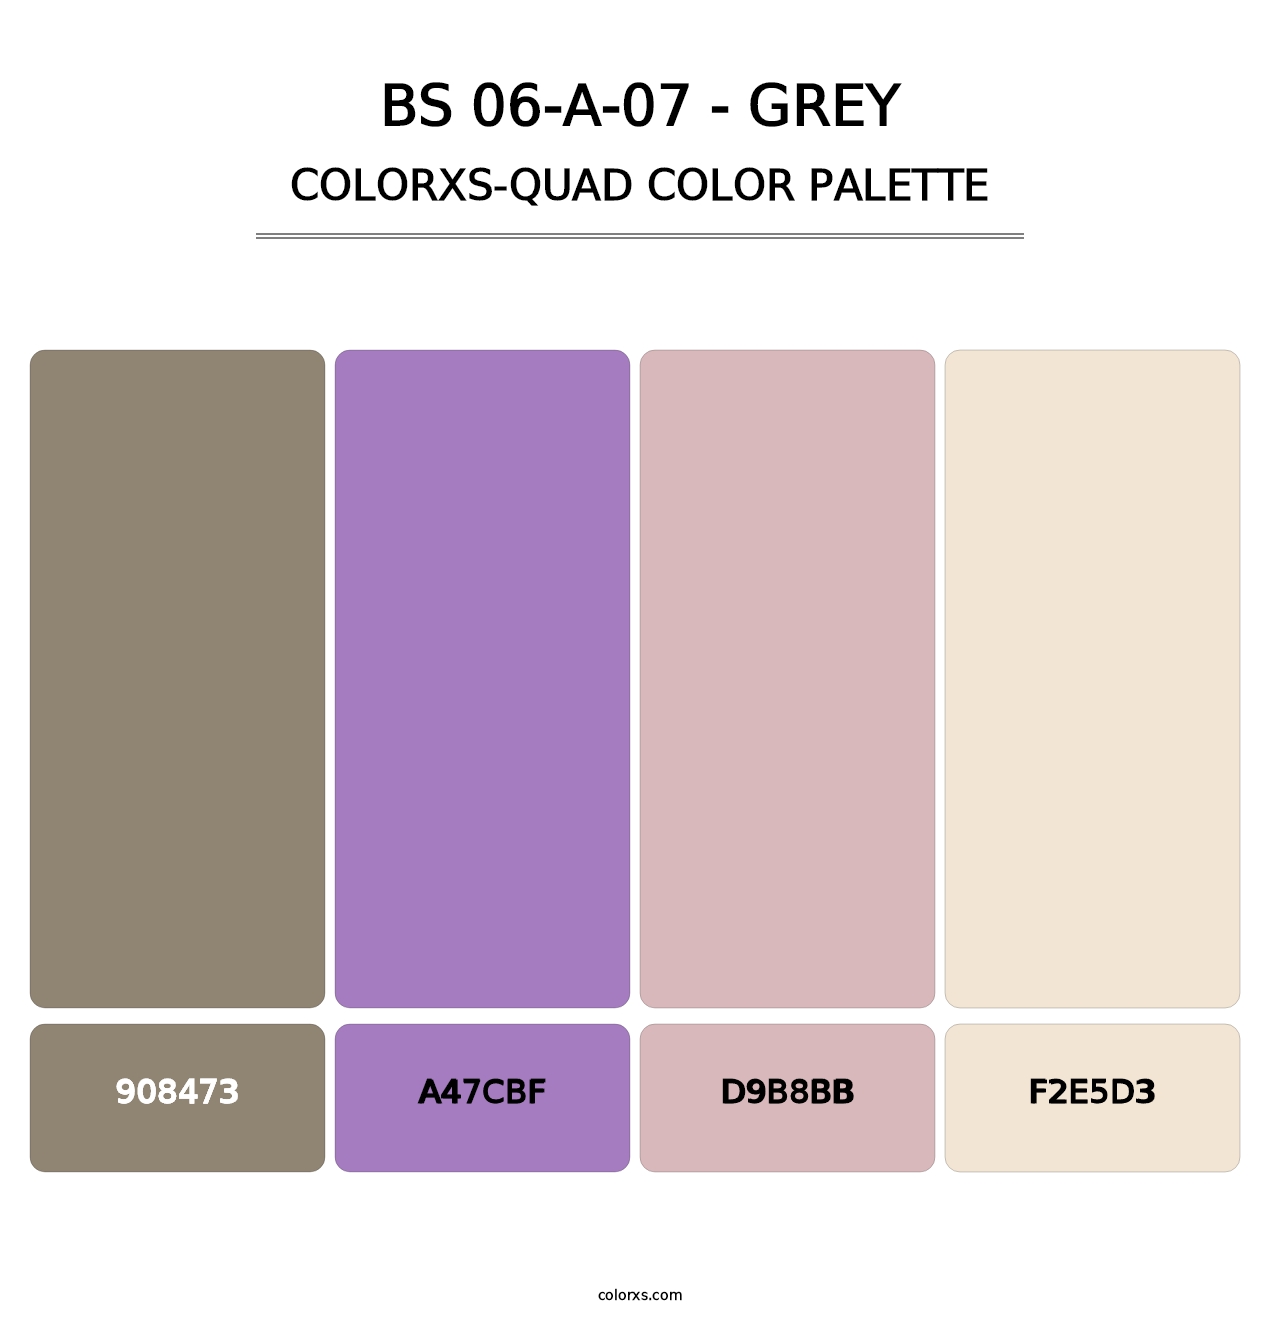 BS 06-A-07 - Grey - Colorxs Quad Palette